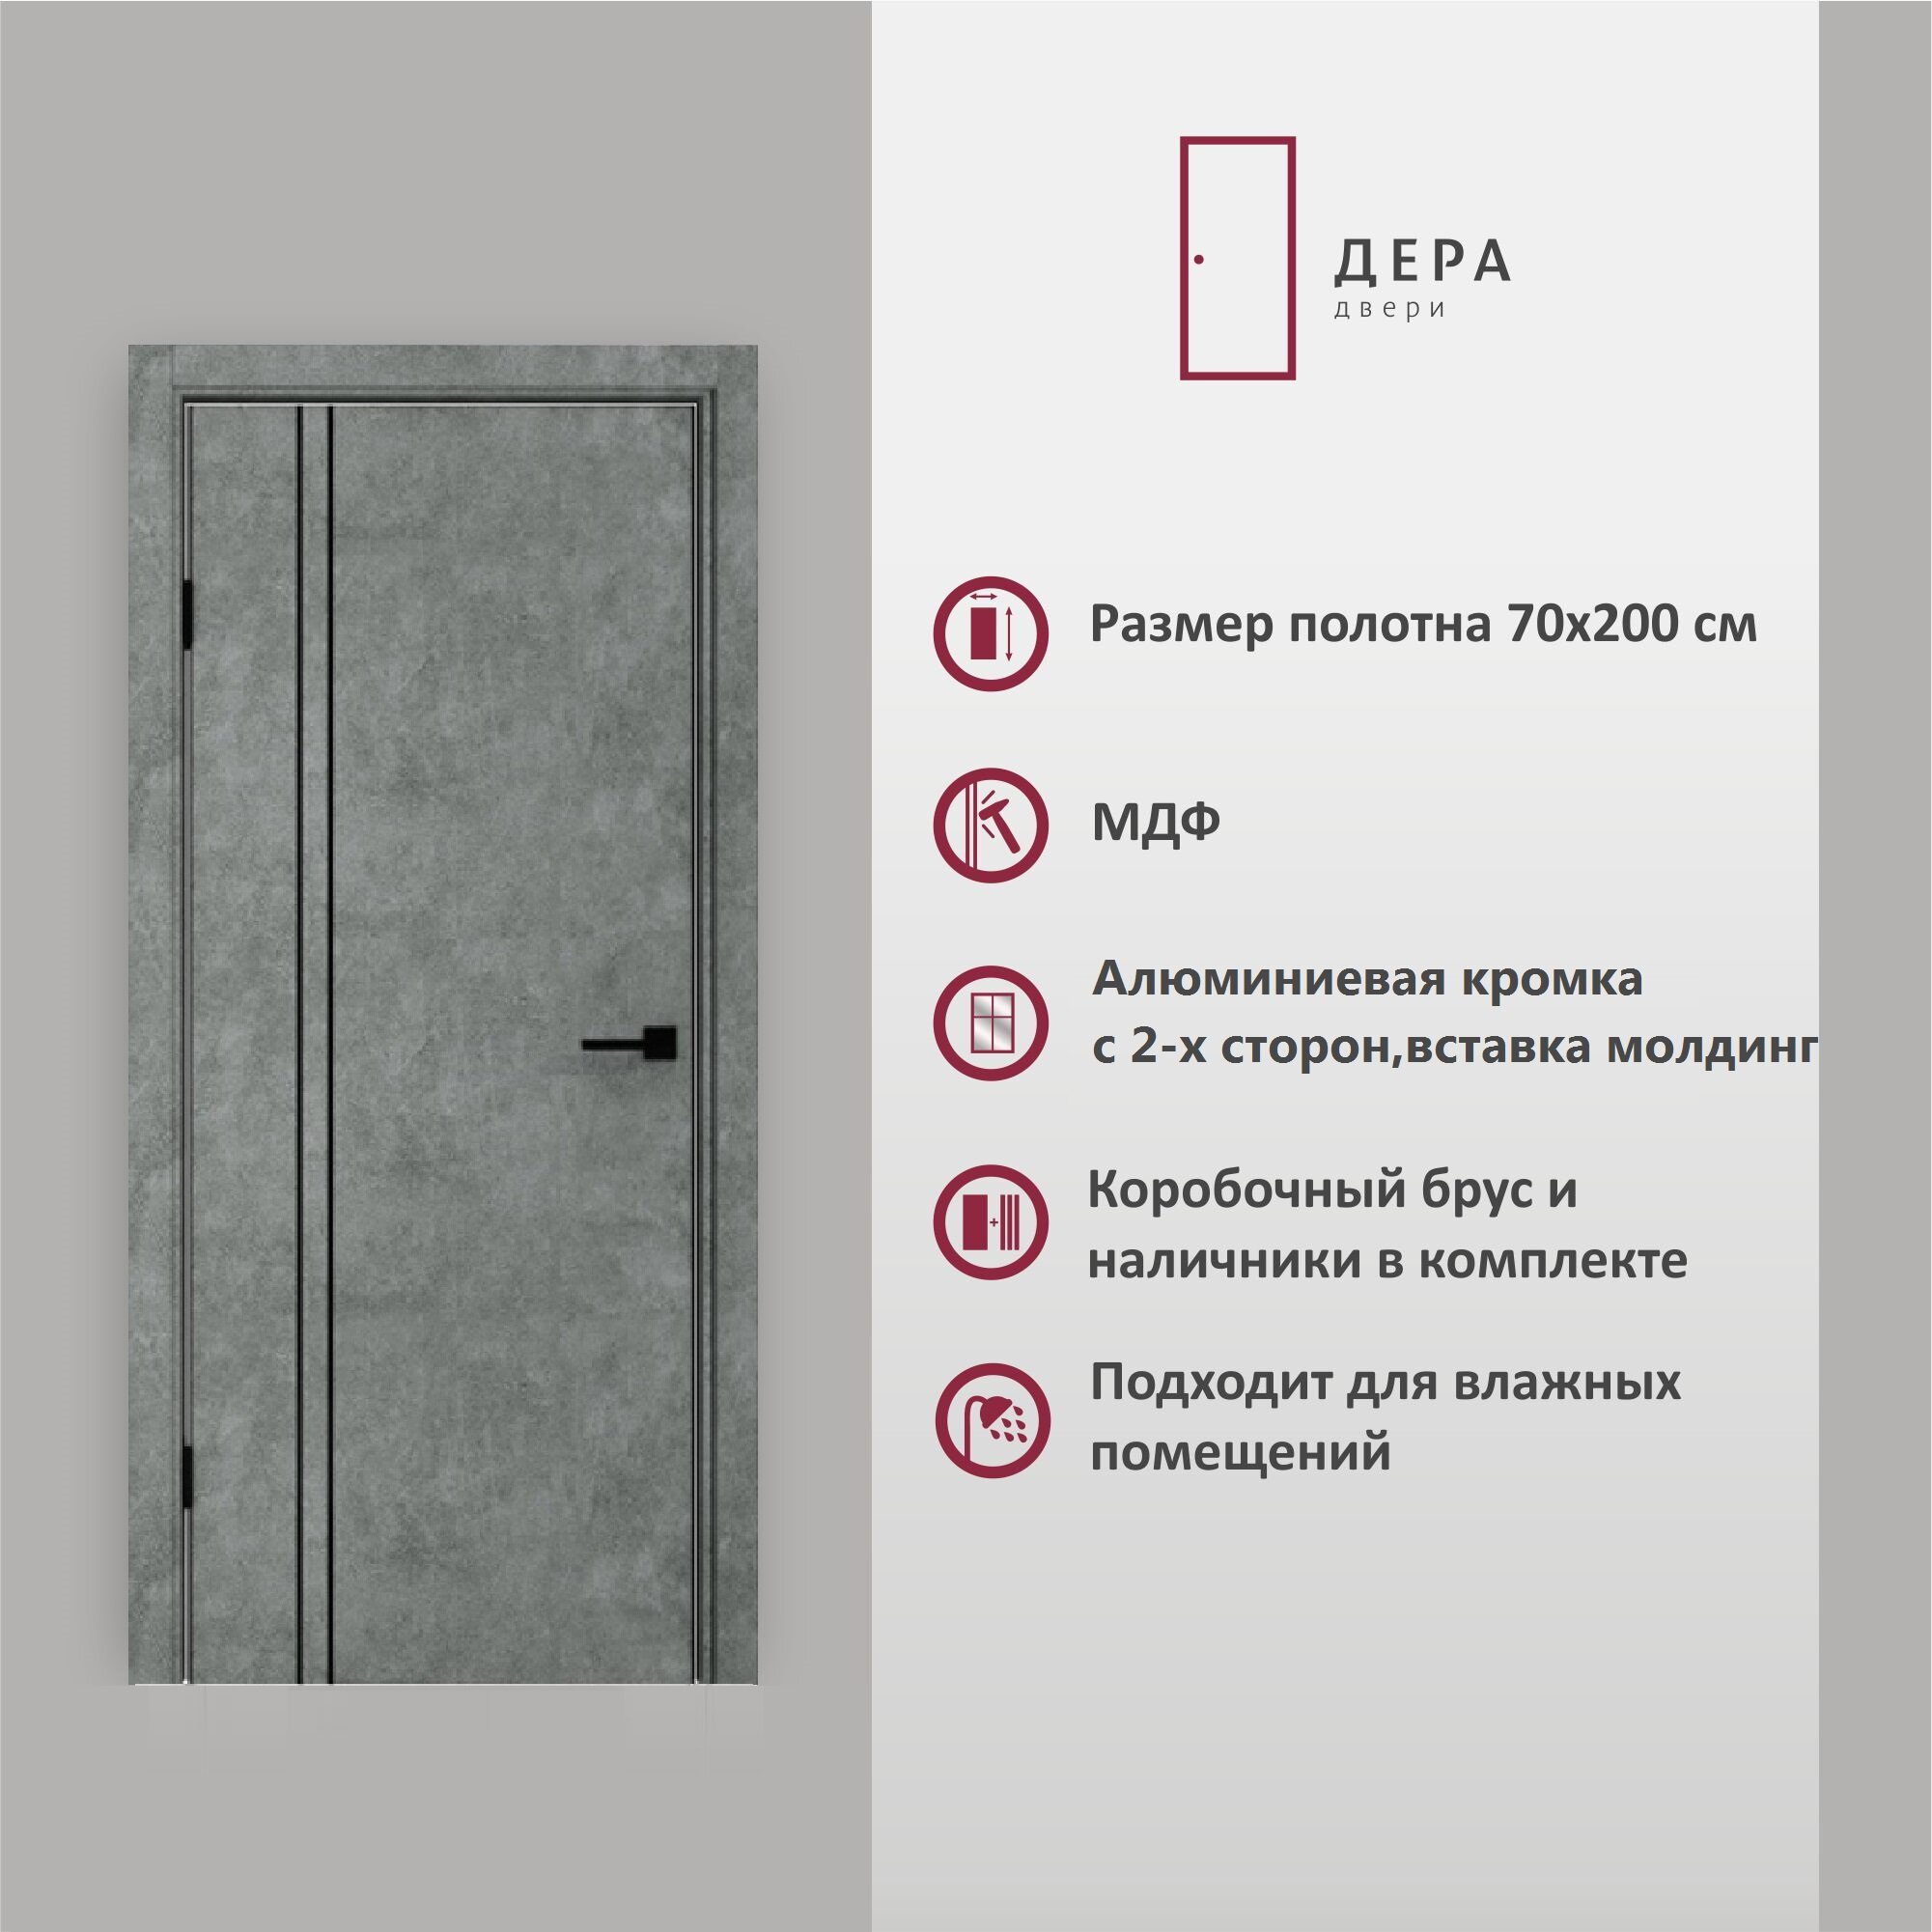 Дверь межкомнатная Дера 326, глухая , в комплекте, ПВХ, Бетон Темный, МДФ, декор молдинг черный, алюминиевая кромка с 2-х сторон, 70х200 см, 1 шт.